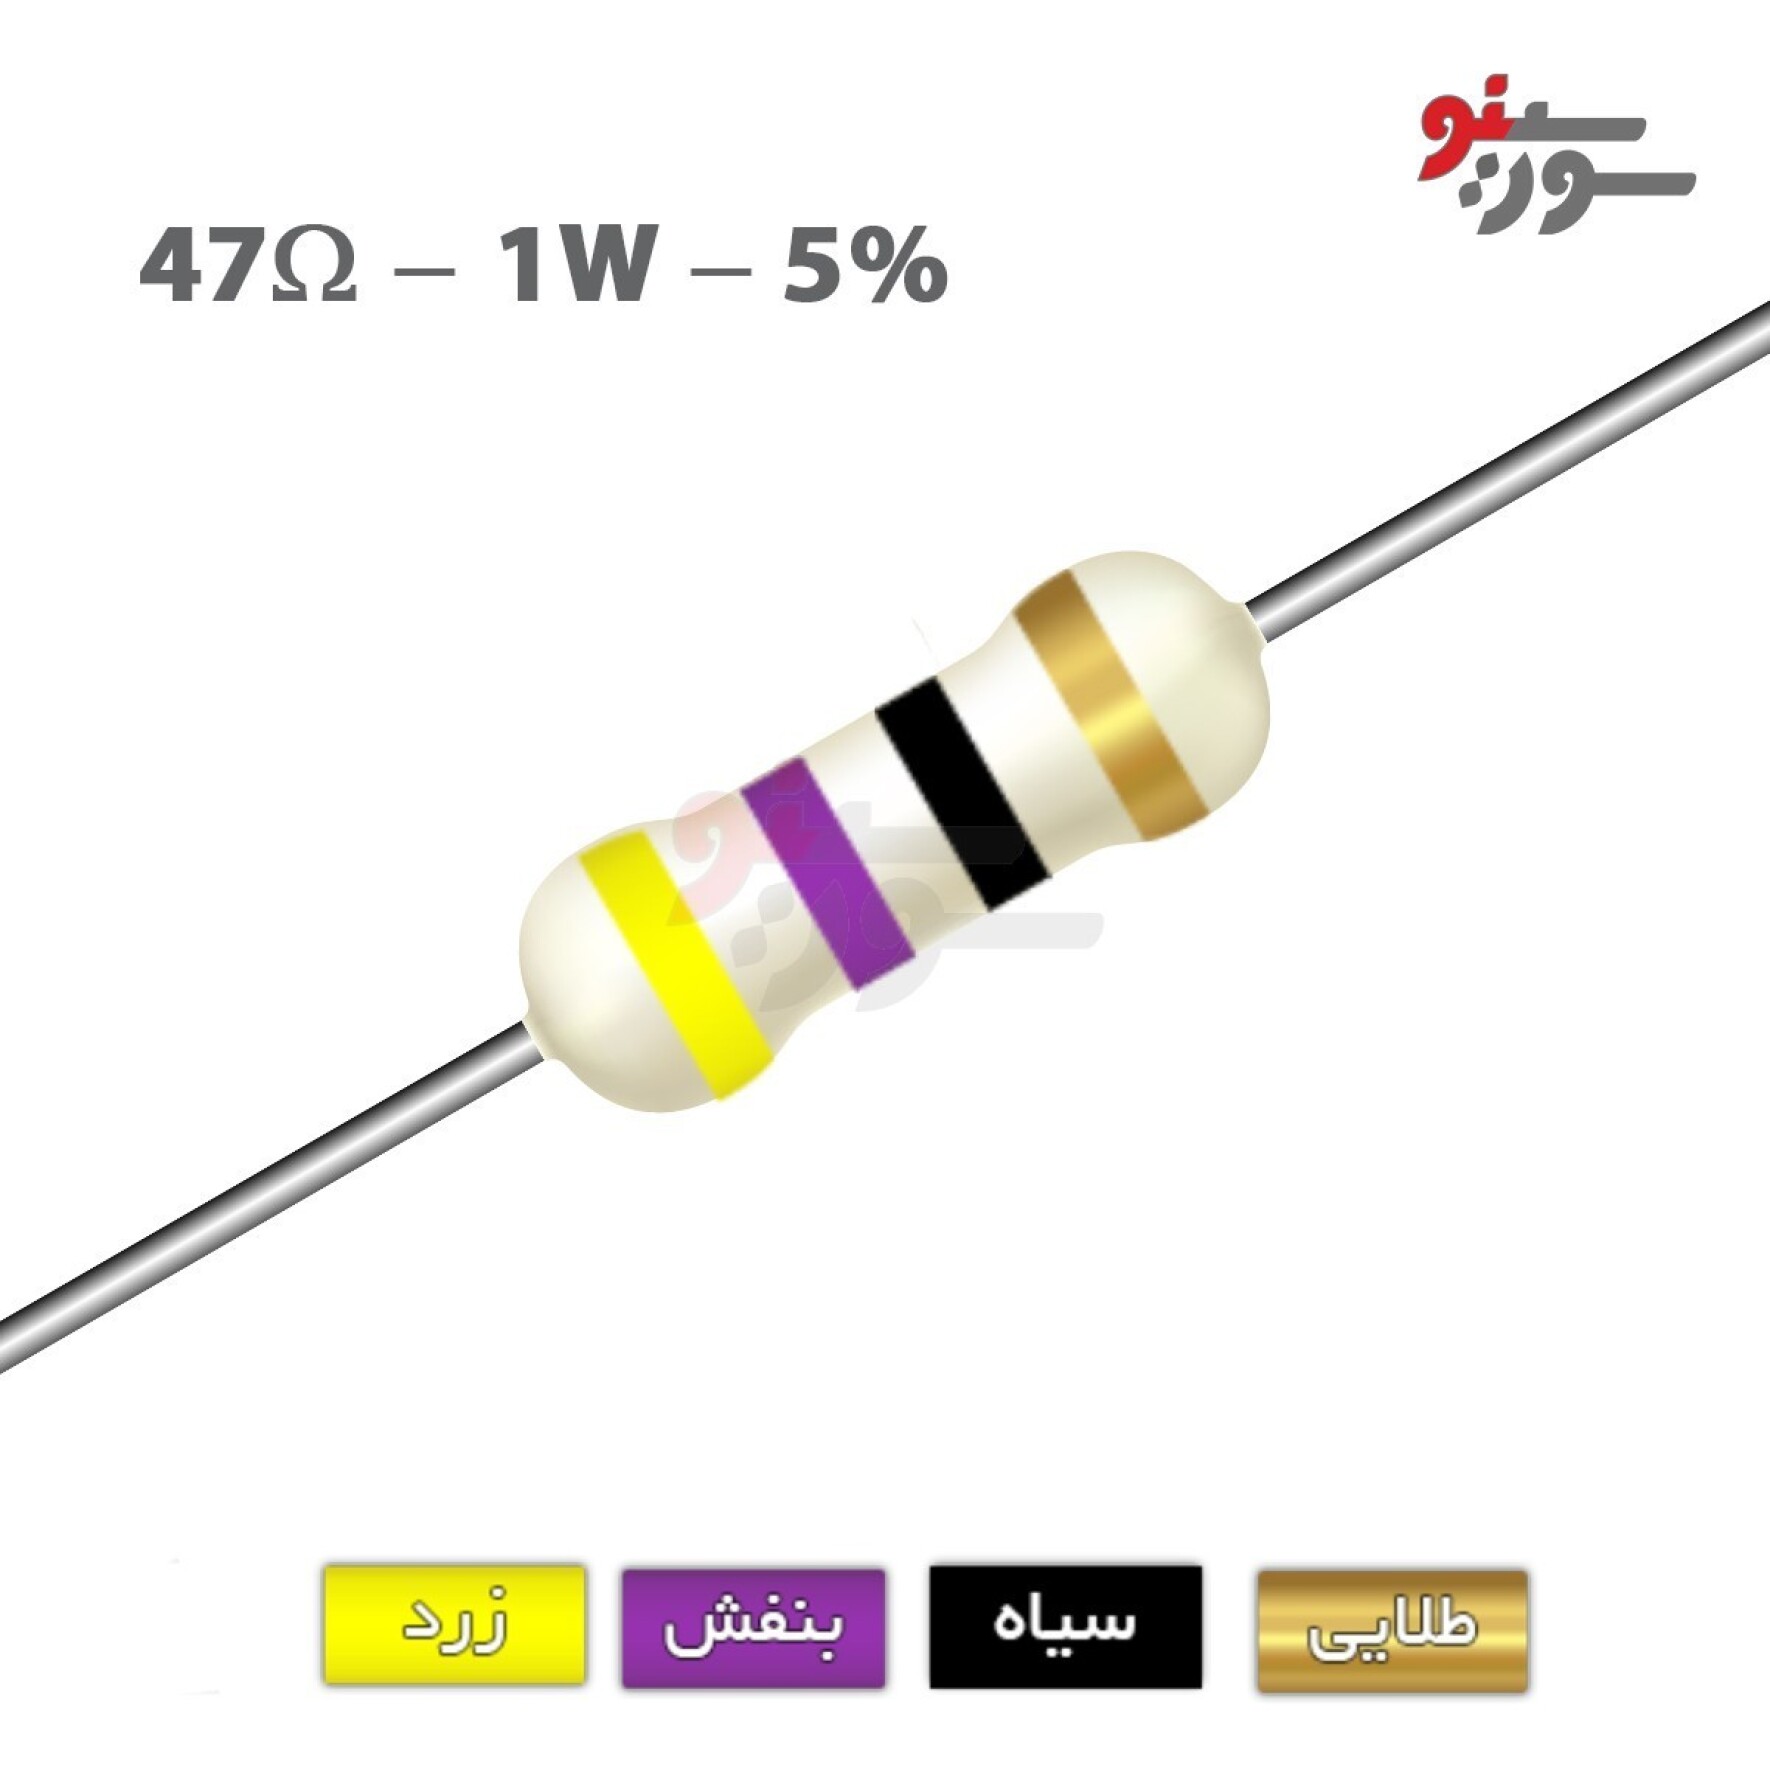 مقاومت 47 اهم 1 وات (47R-1W-5%)